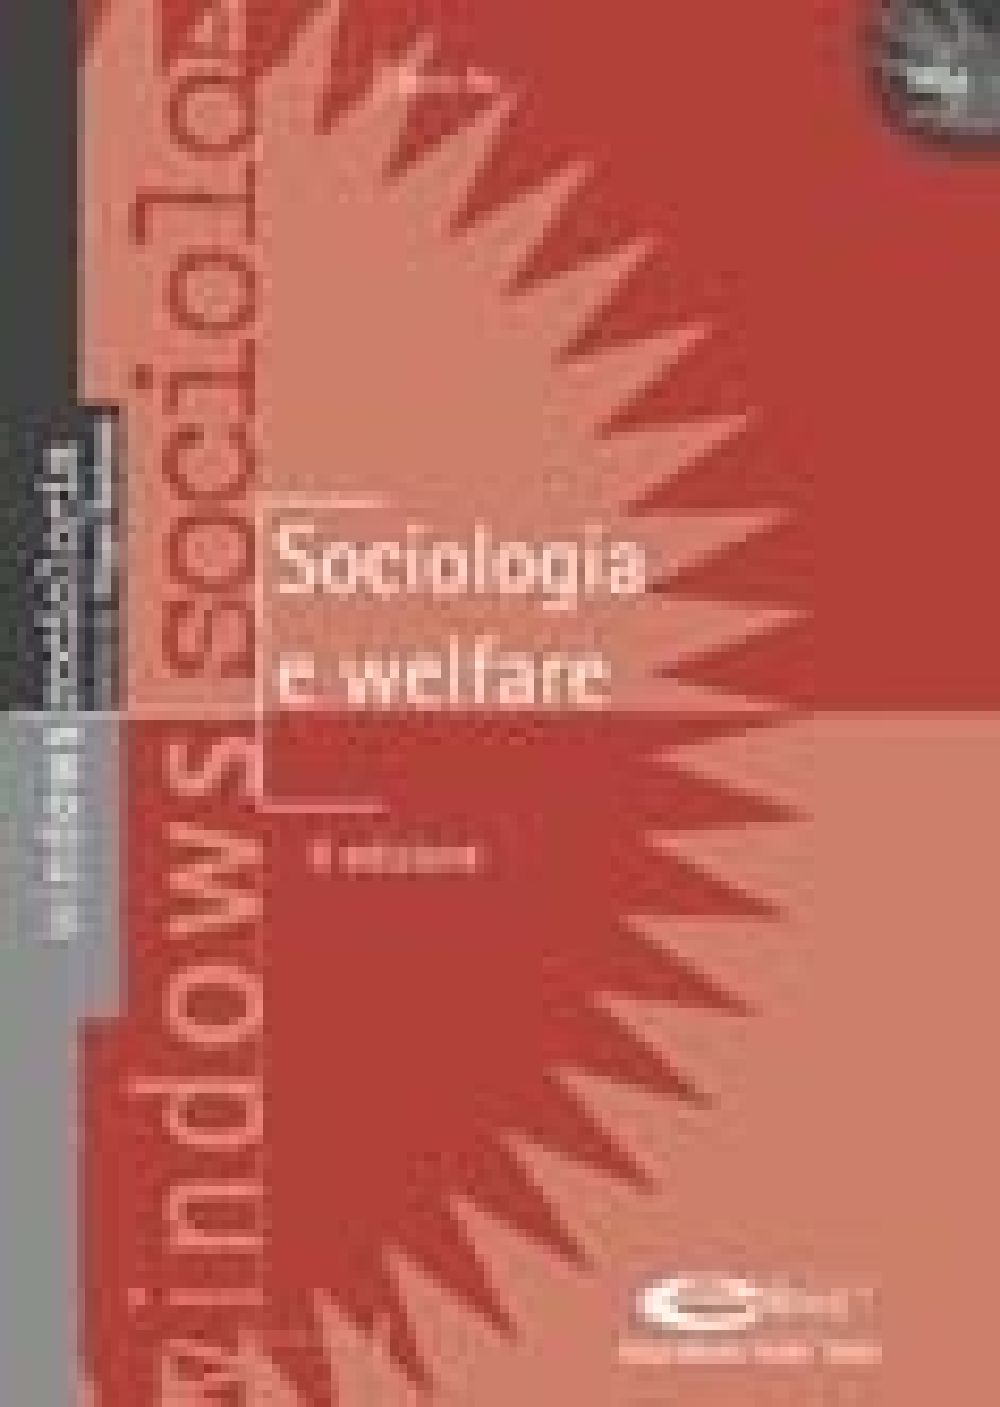 [Ebook] Sociologia e welfare